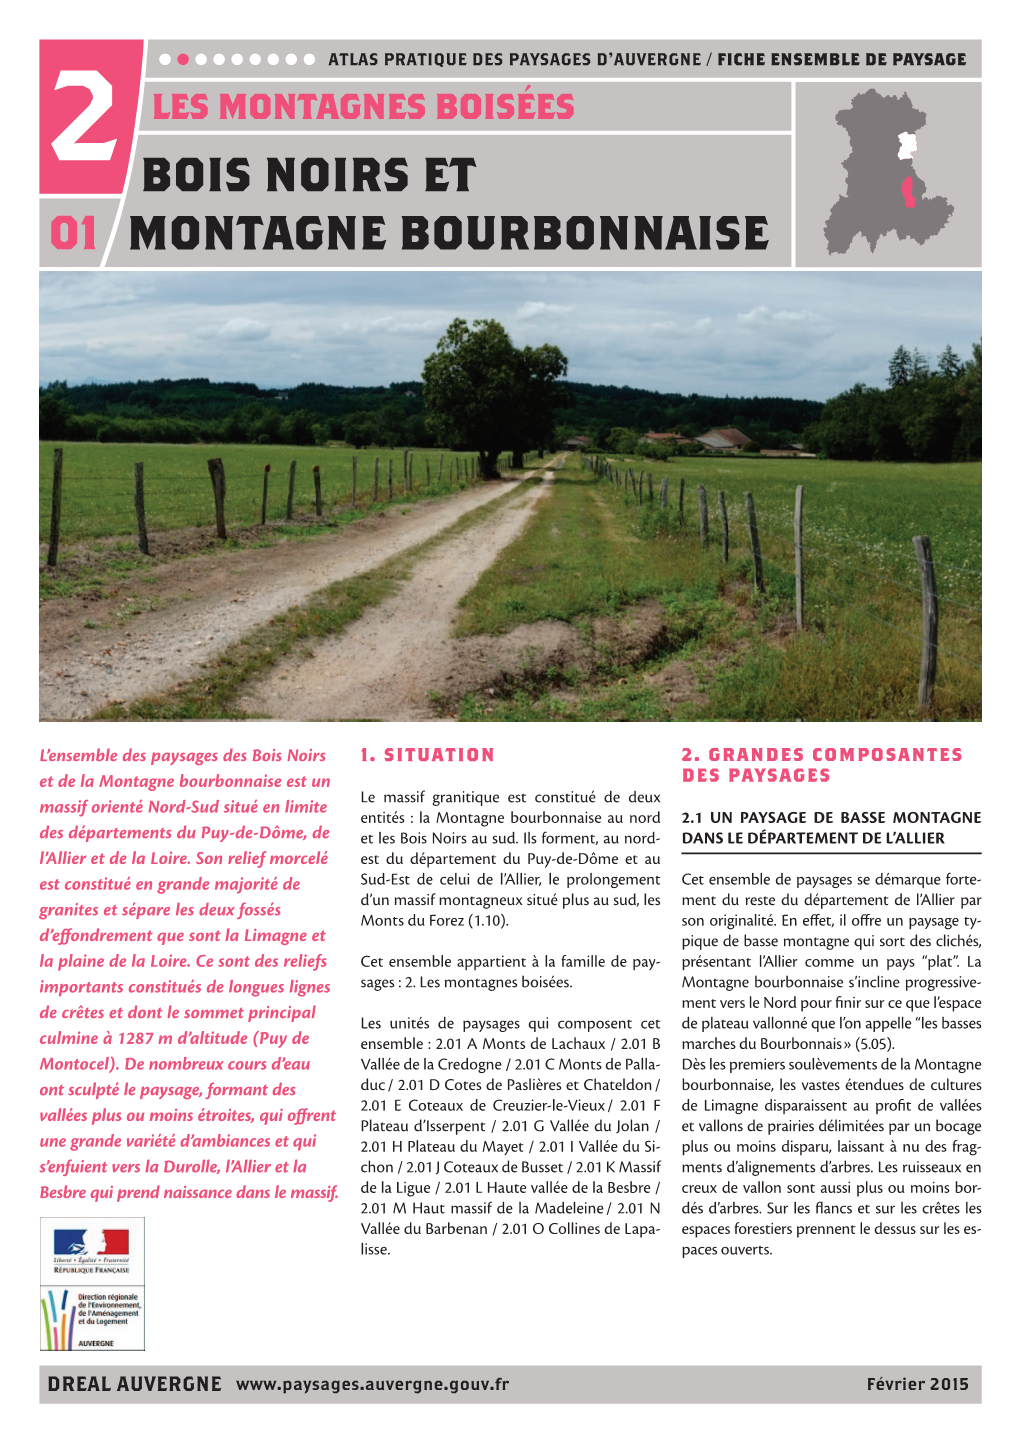 Fiche Imprimable 2.01 Bois Noirs Et Montagne Bourbonnaise